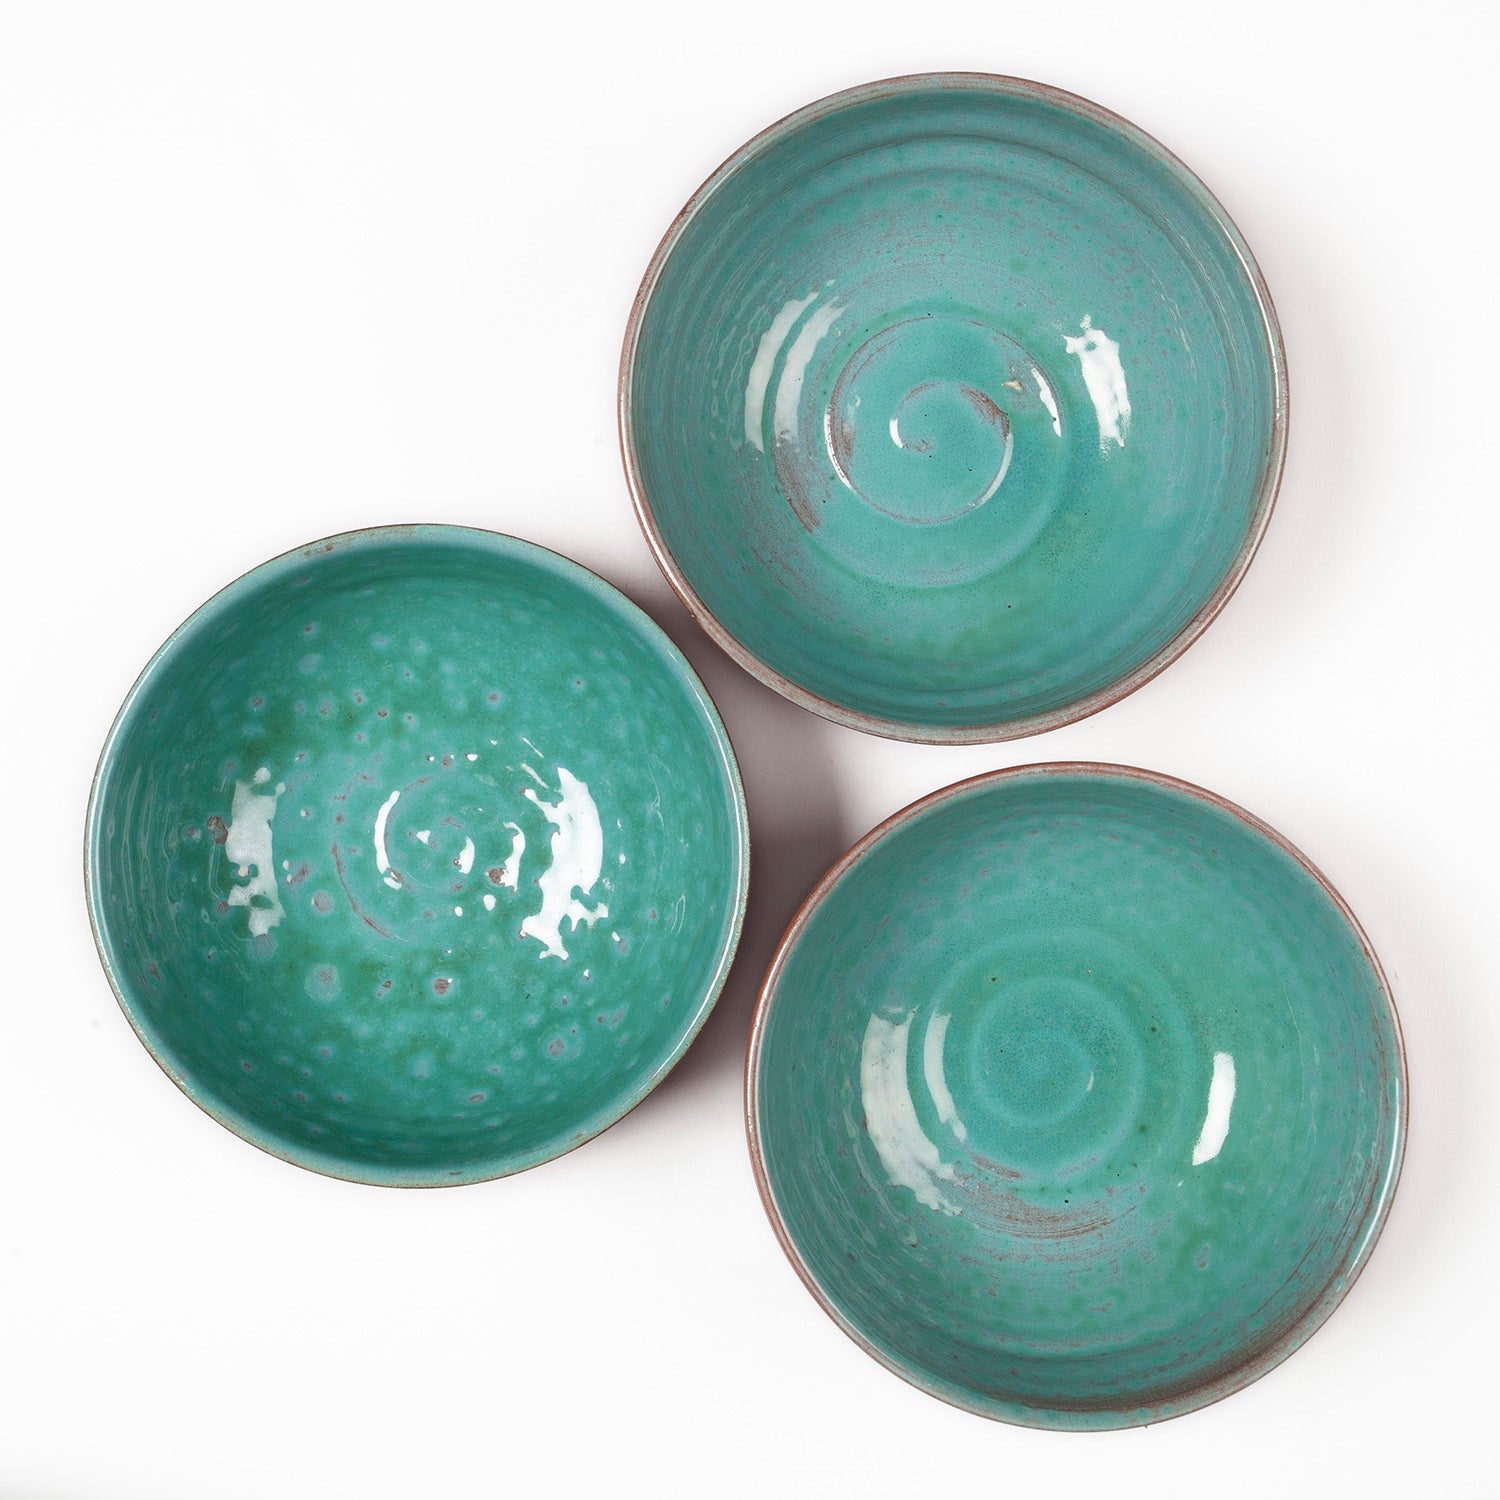 Glazed Terracotta Bowl - 5"